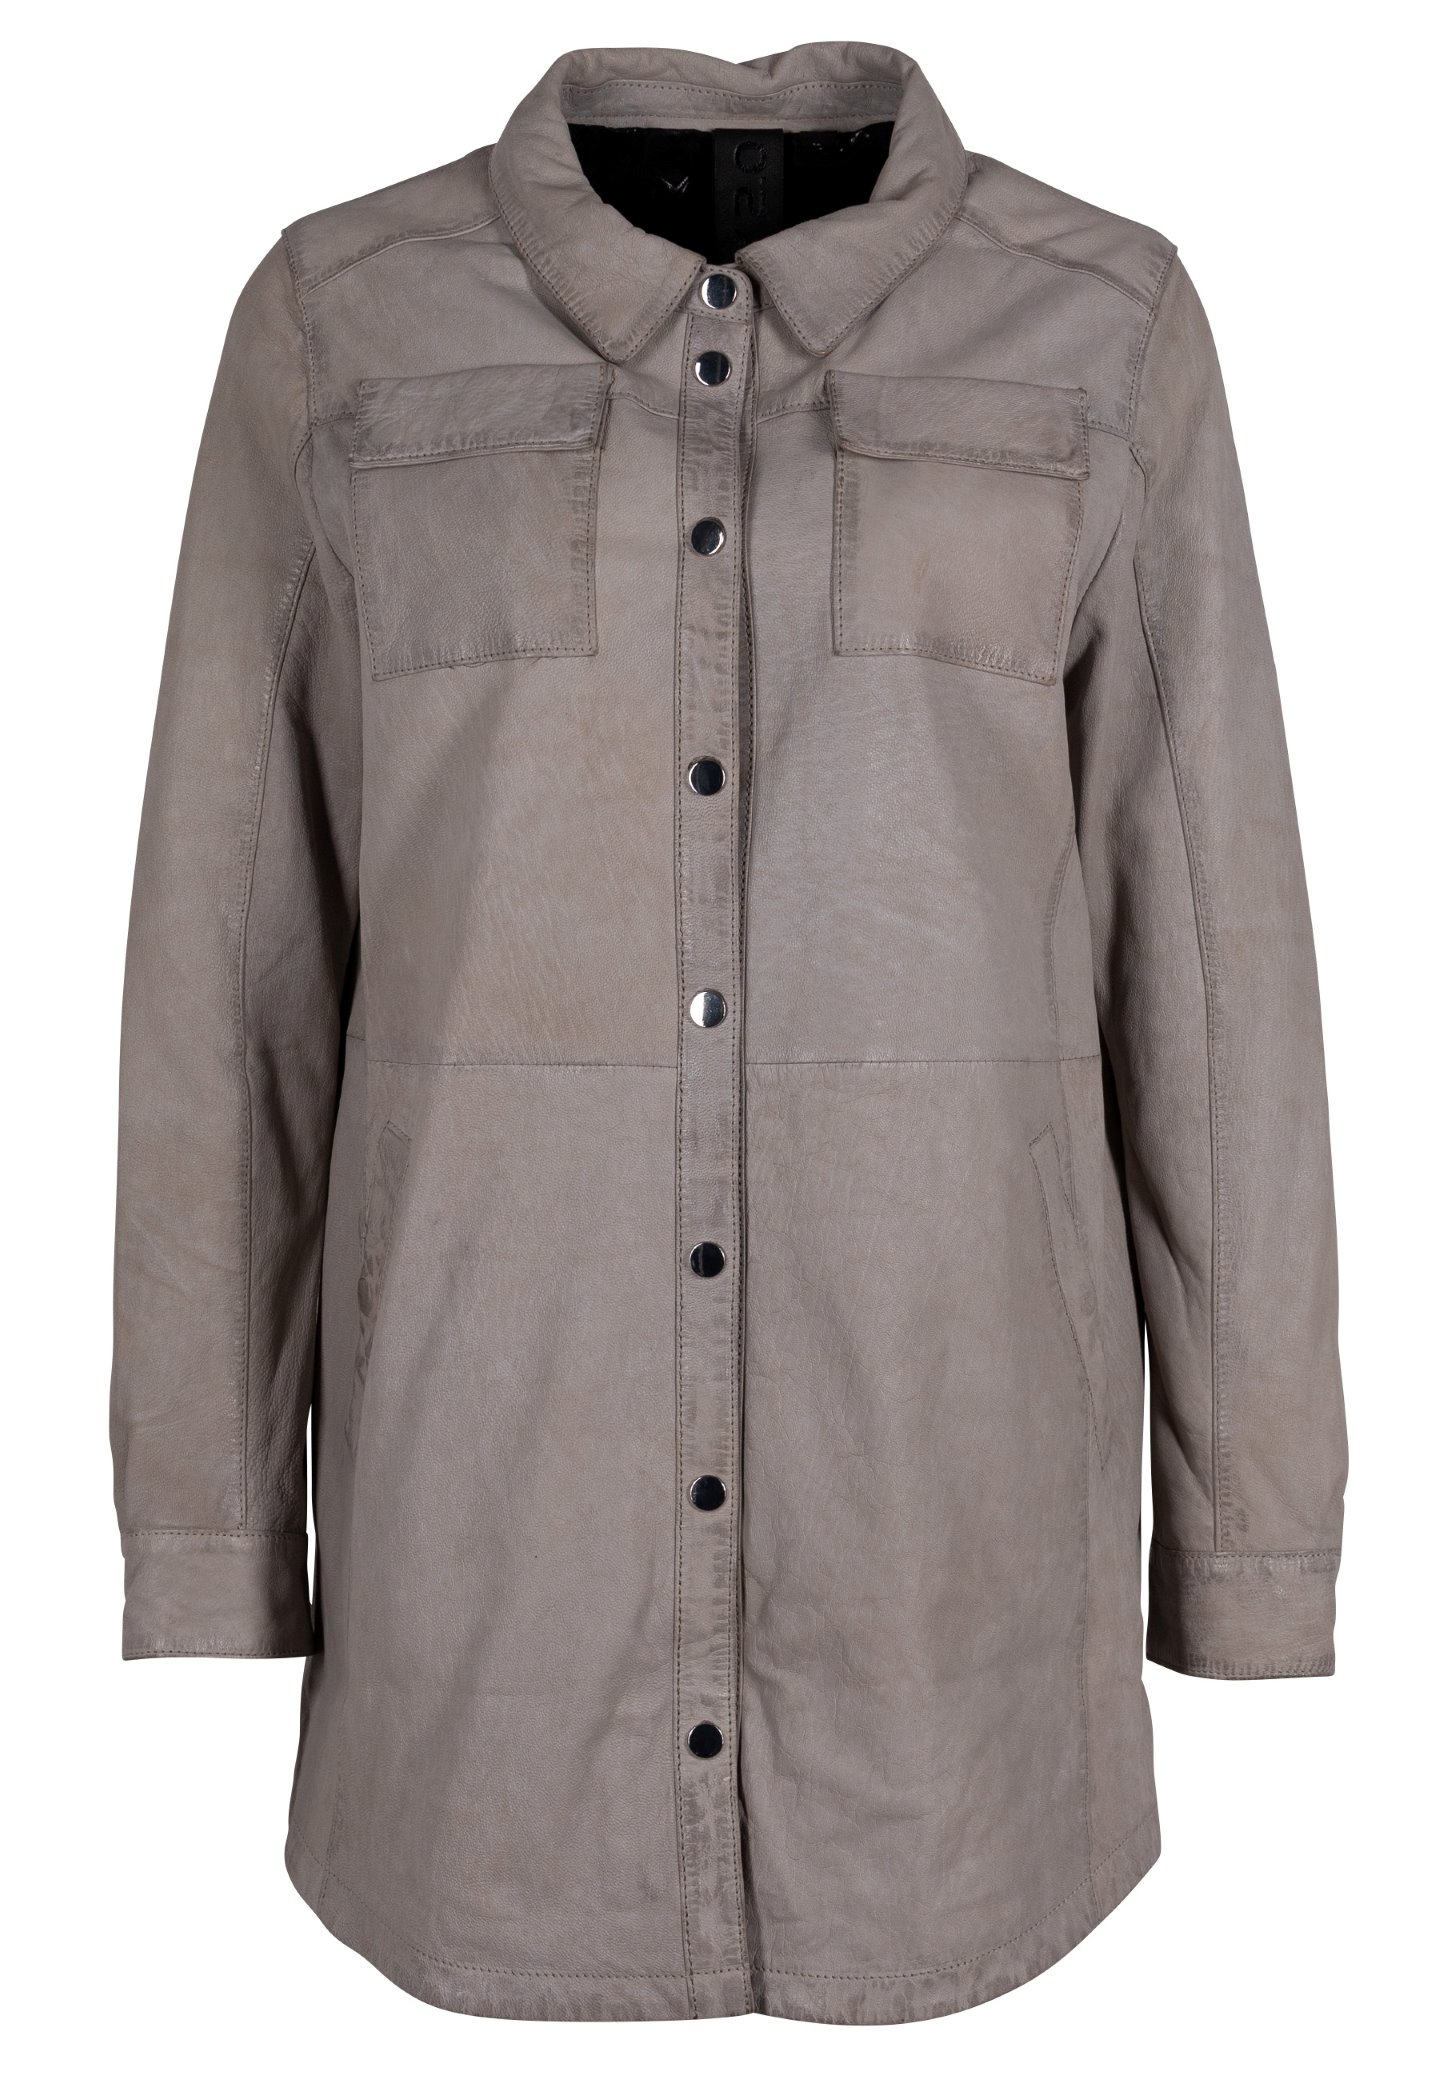 Dámský šedý kožený kabátek - prodloužená oversize košile G2WMahi